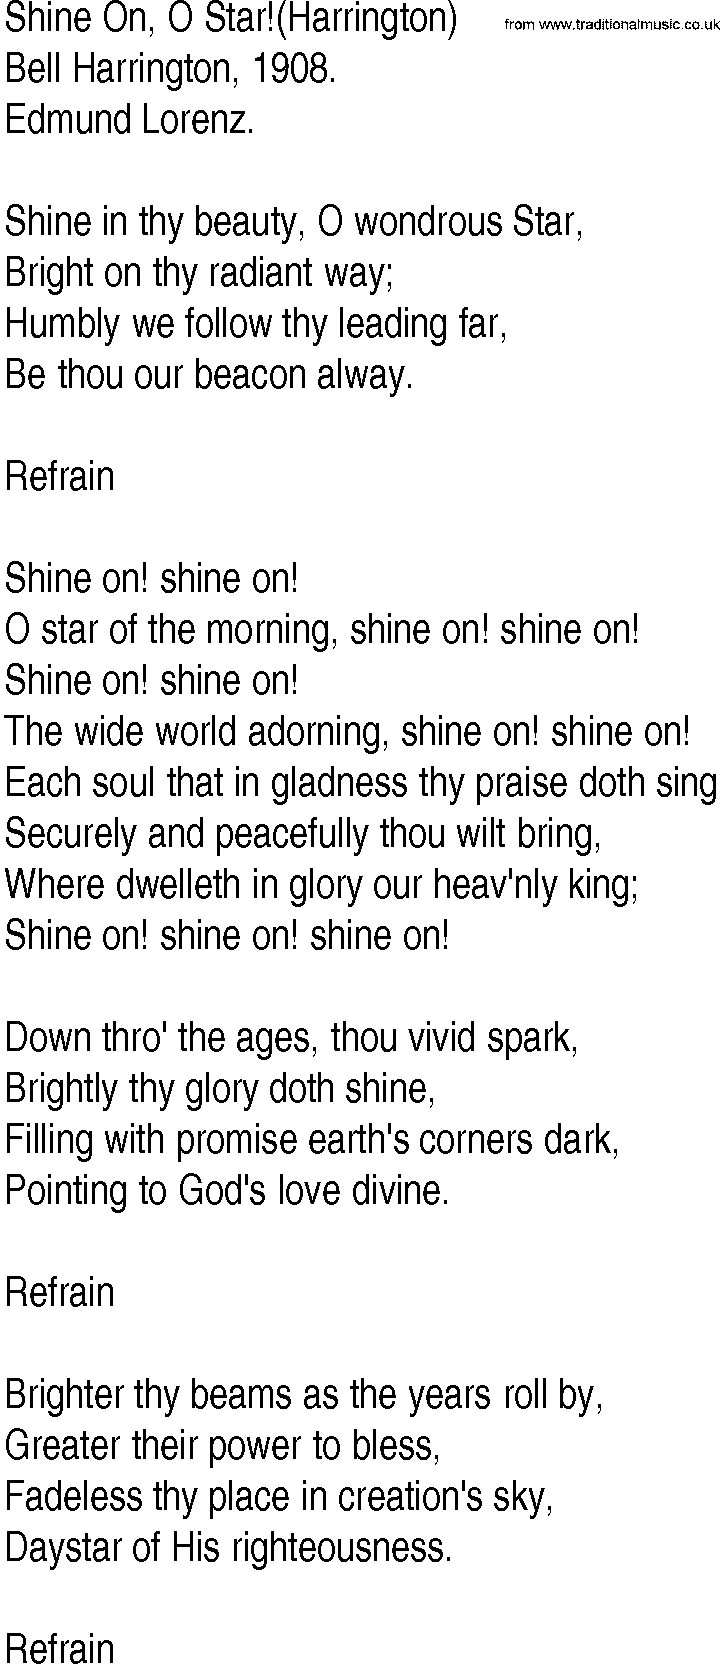 Hymn and Gospel Song: Shine On, O Star!(Harrington) by Bell Harrington lyrics